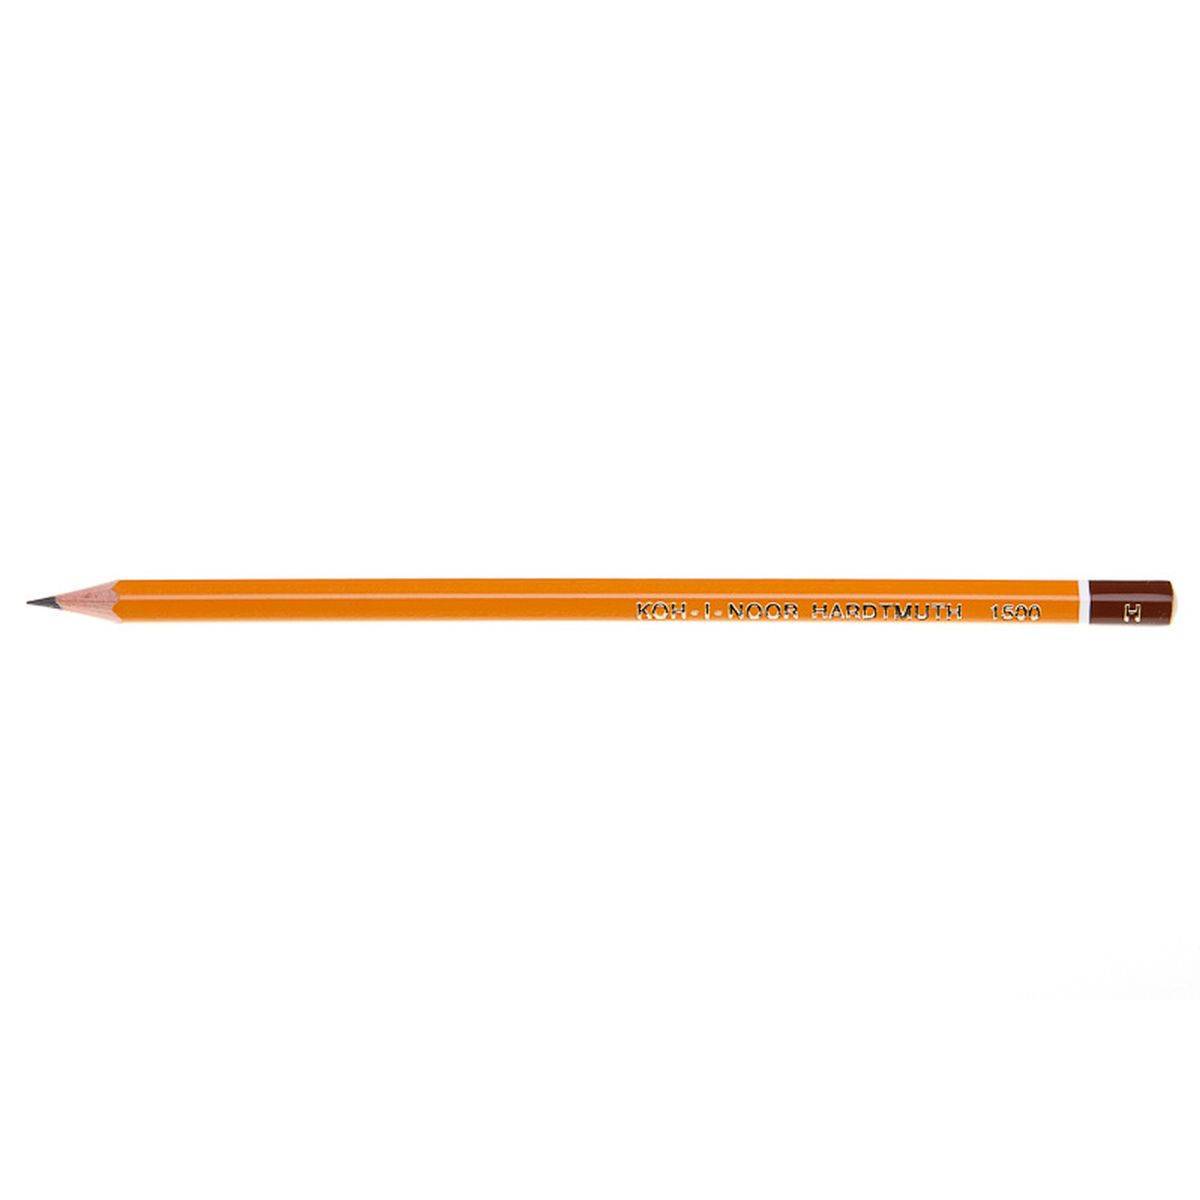 Ołówek Koh-I-Noor 1500 H